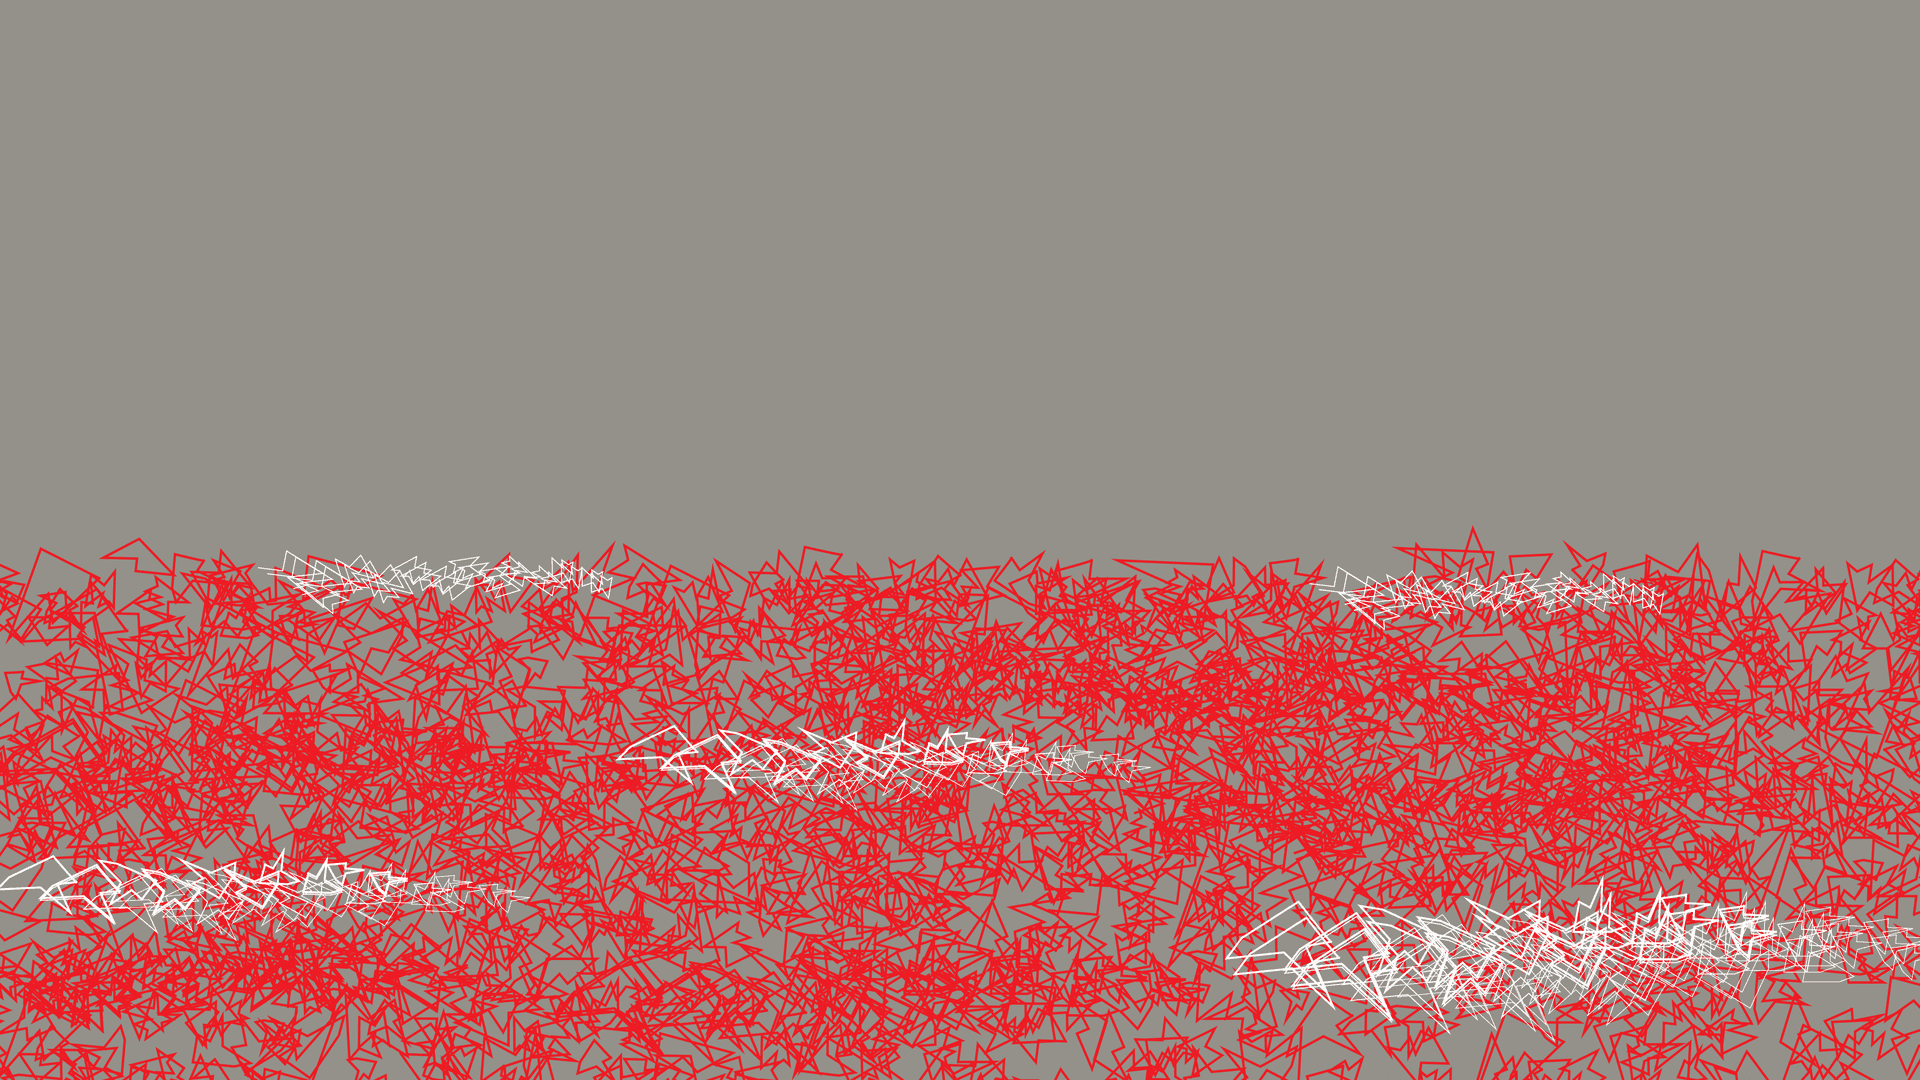 Ein Meer von roten und vereinzelt auch weißen gezackten Formen in der unteren Bildhälfte auf grauem Hintergrund